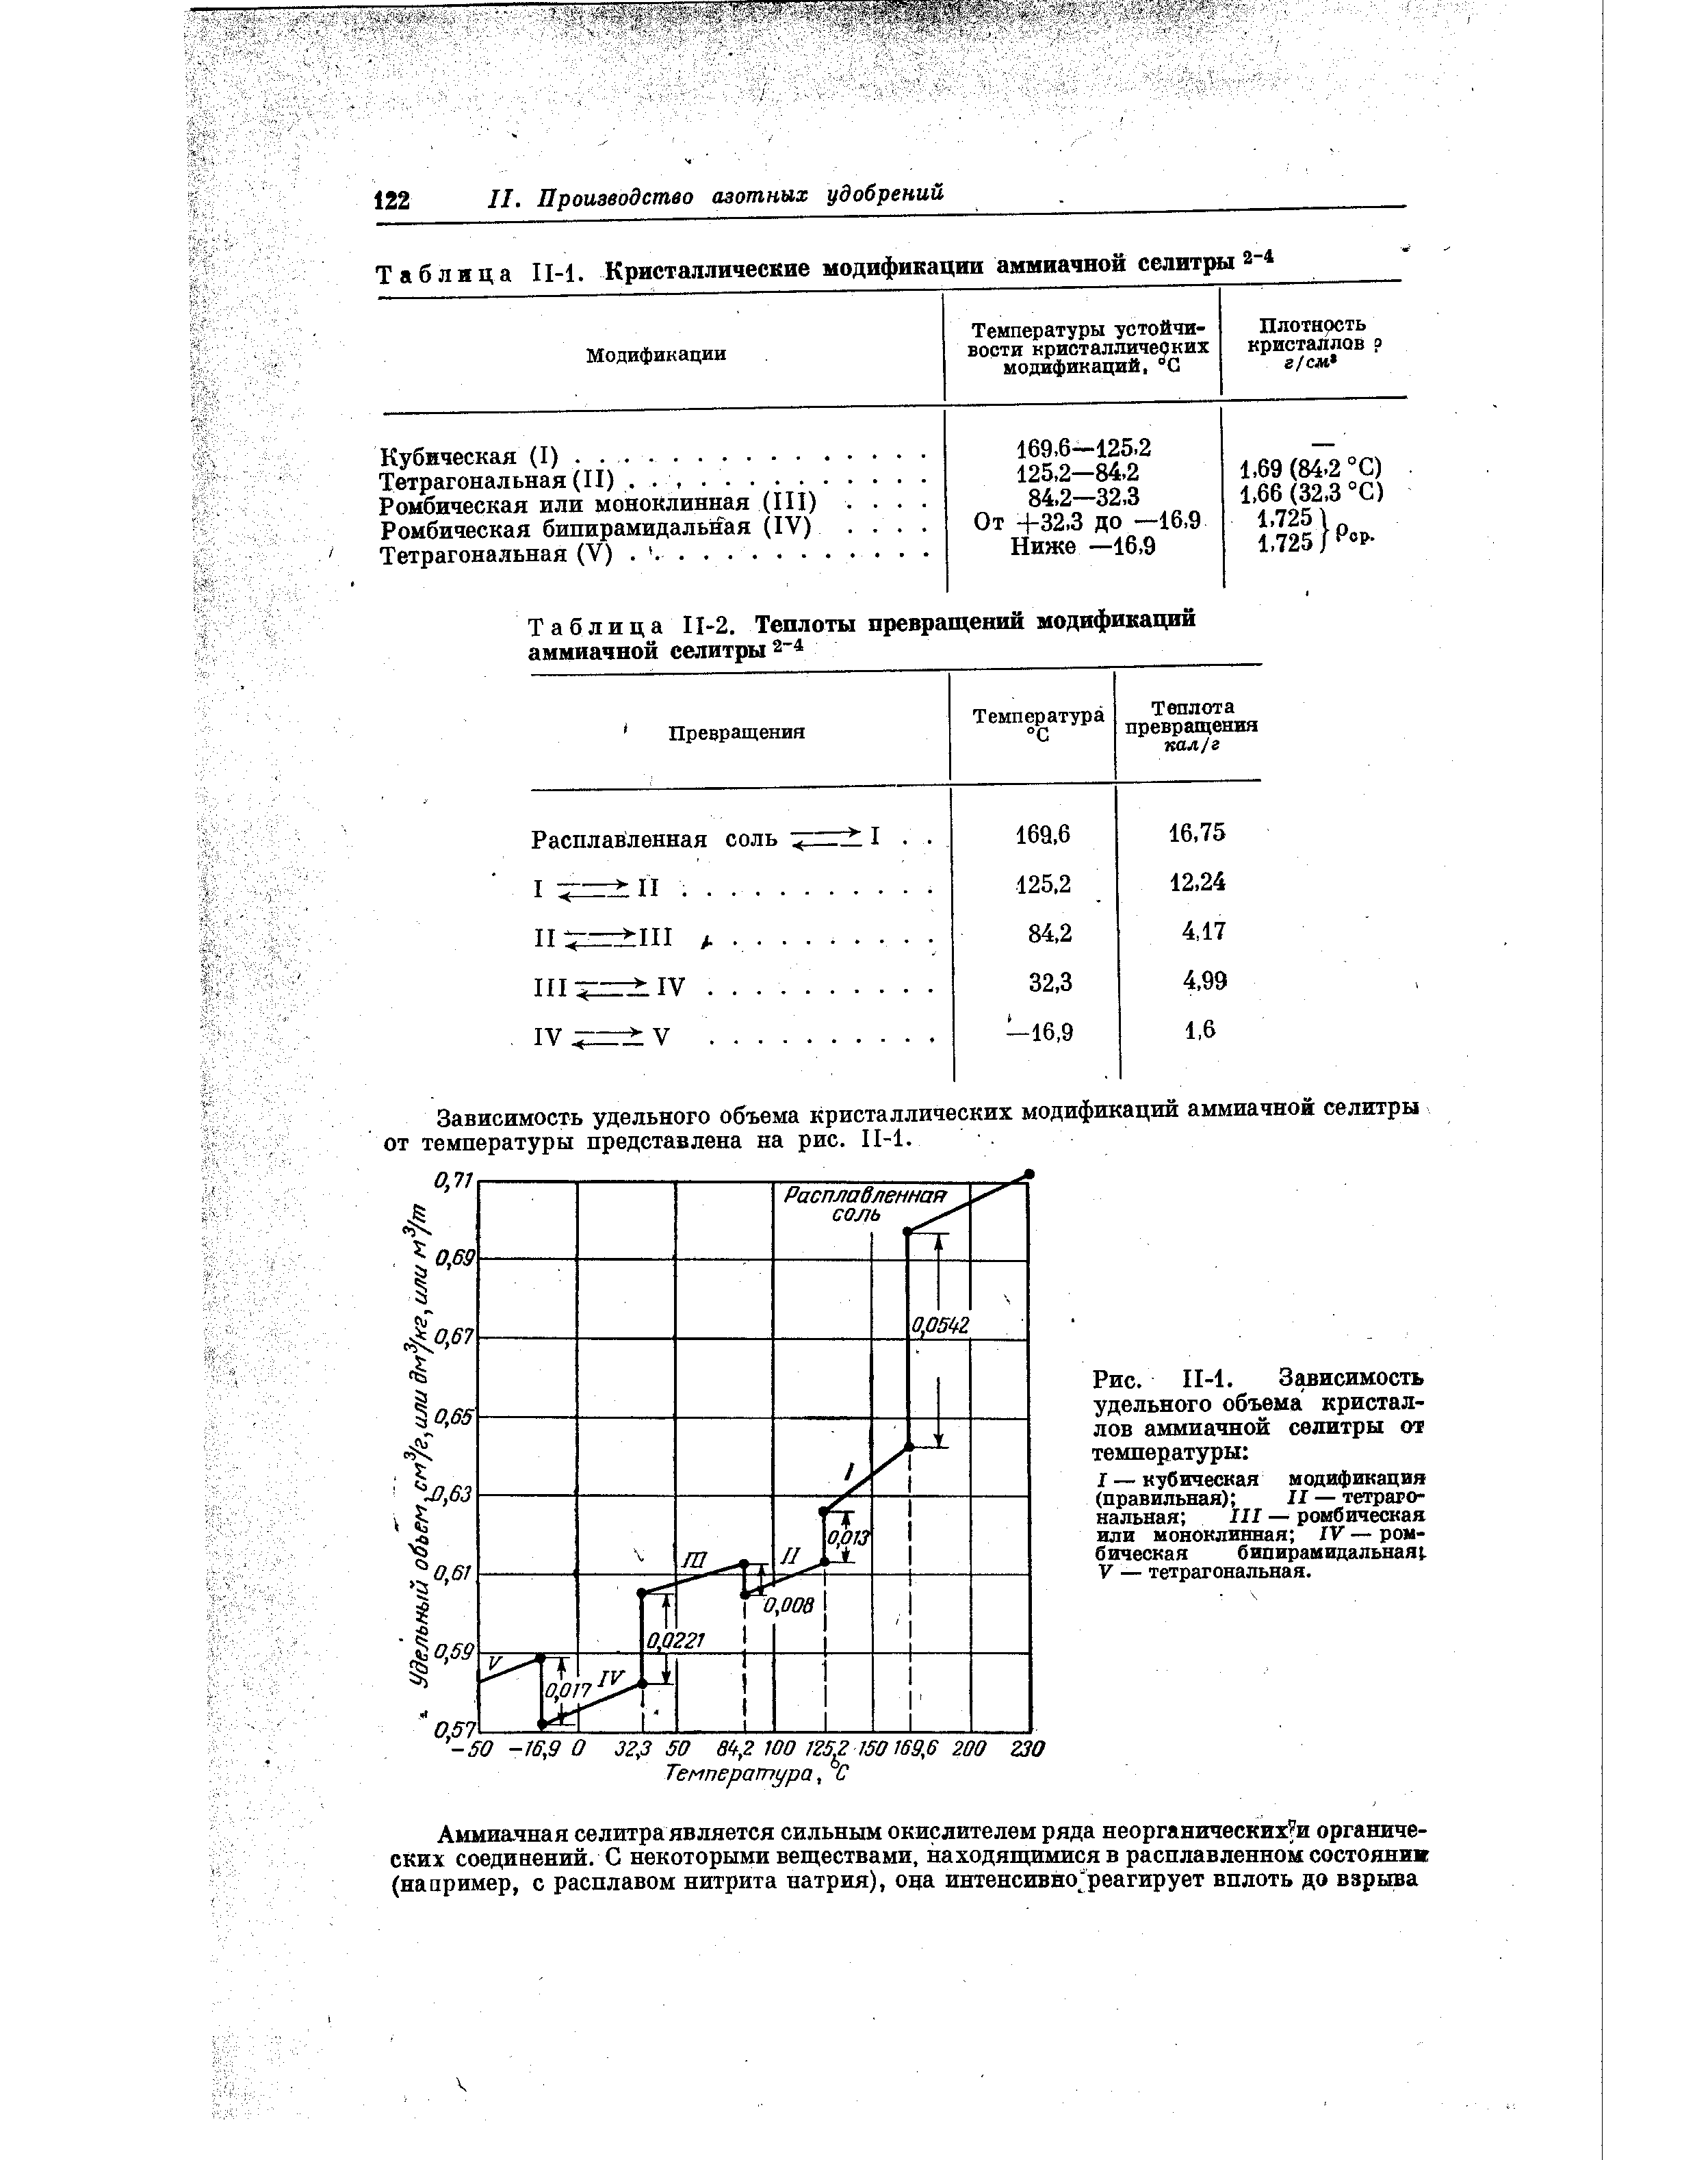 Таблица II-2. <a href="/info/196050">Теплоты превращений</a> модификаций аммиачной селитры 2-4
